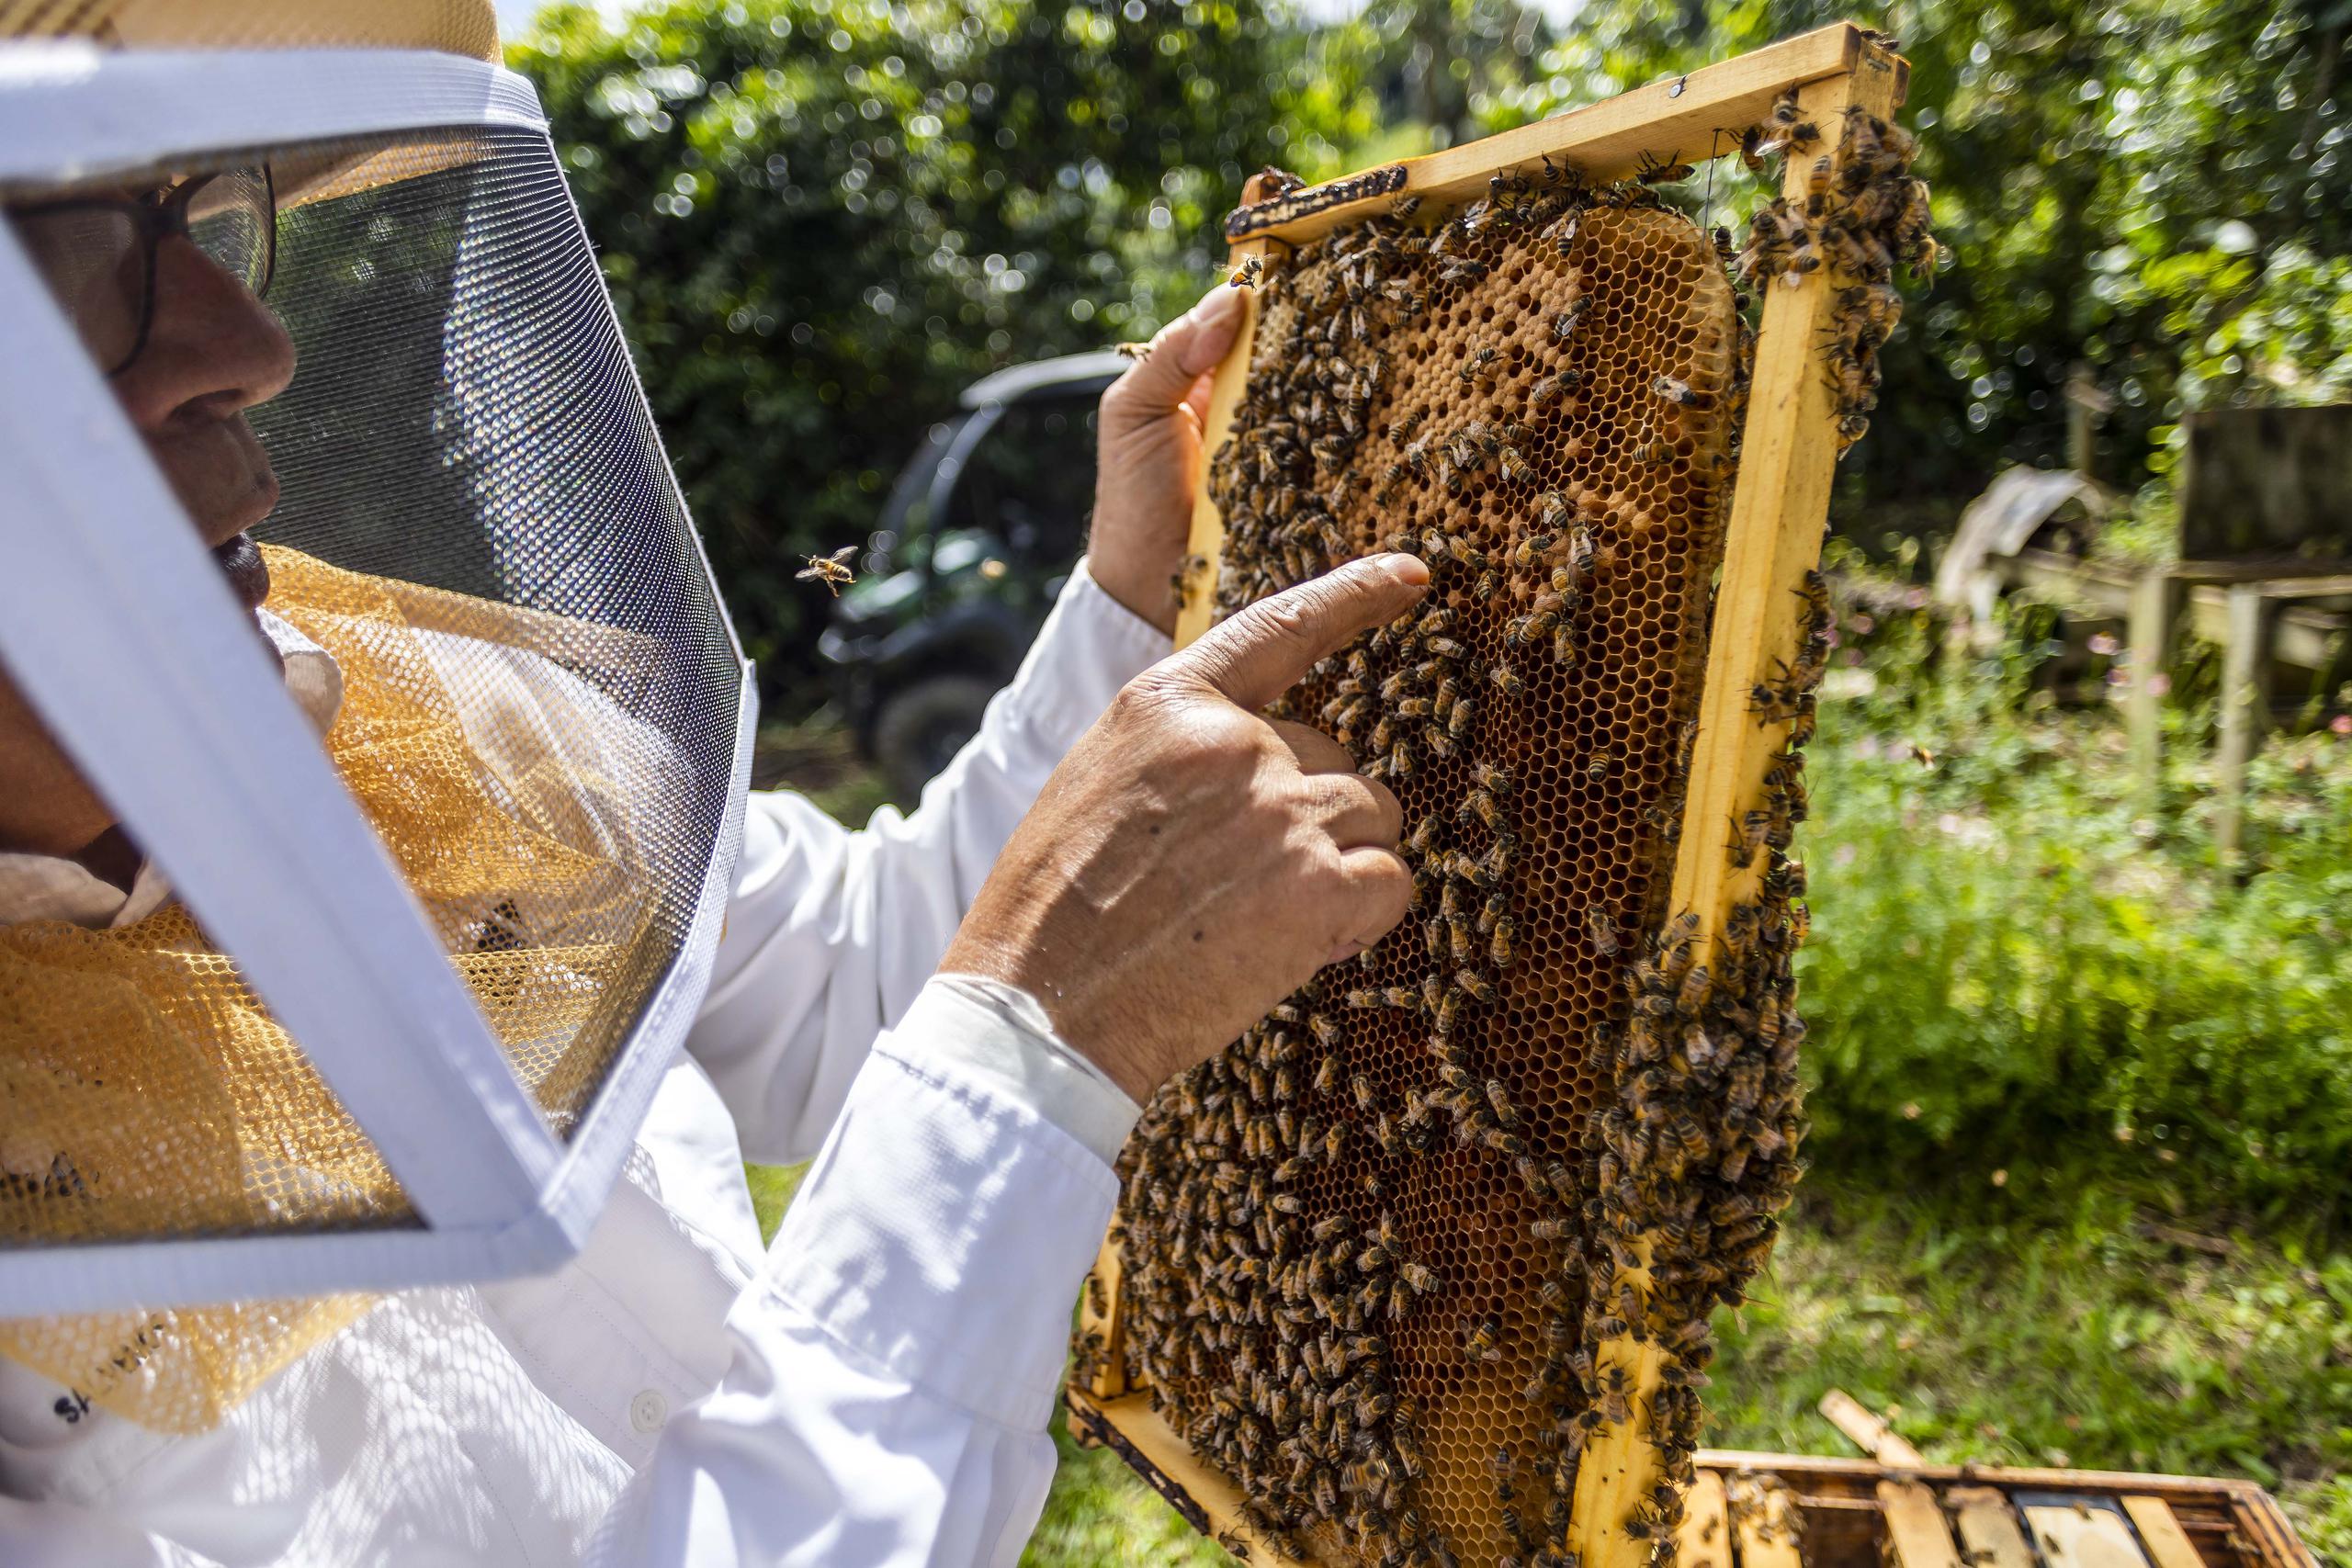 El abogado de profesión cuida de un apiario con alrededor de 10 colmenas en su pueblo de Trujillo Alto. 